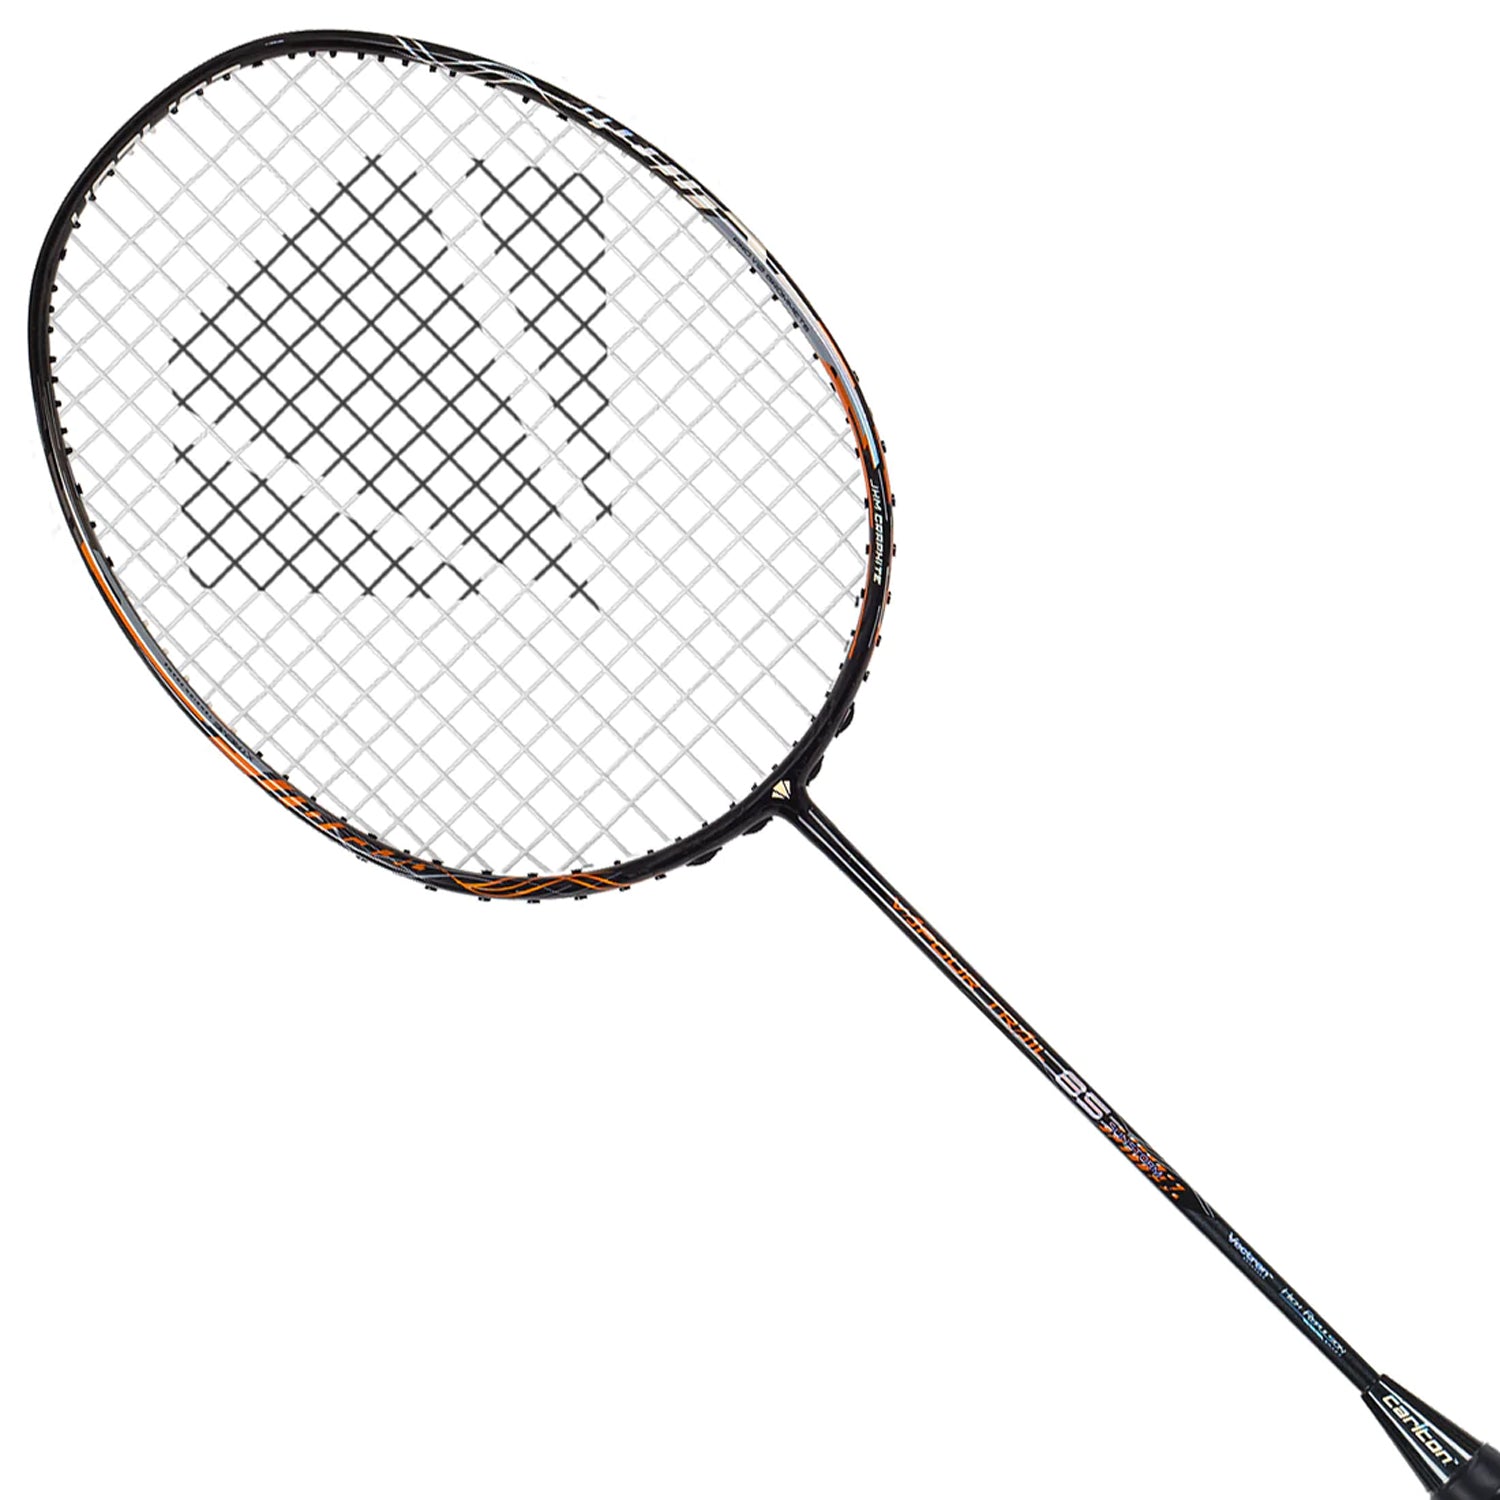 Carlton Vapour Trail 85 Unstrung Badminton Racquet Sun Storm, G6- Black - Best Price online Prokicksports.com